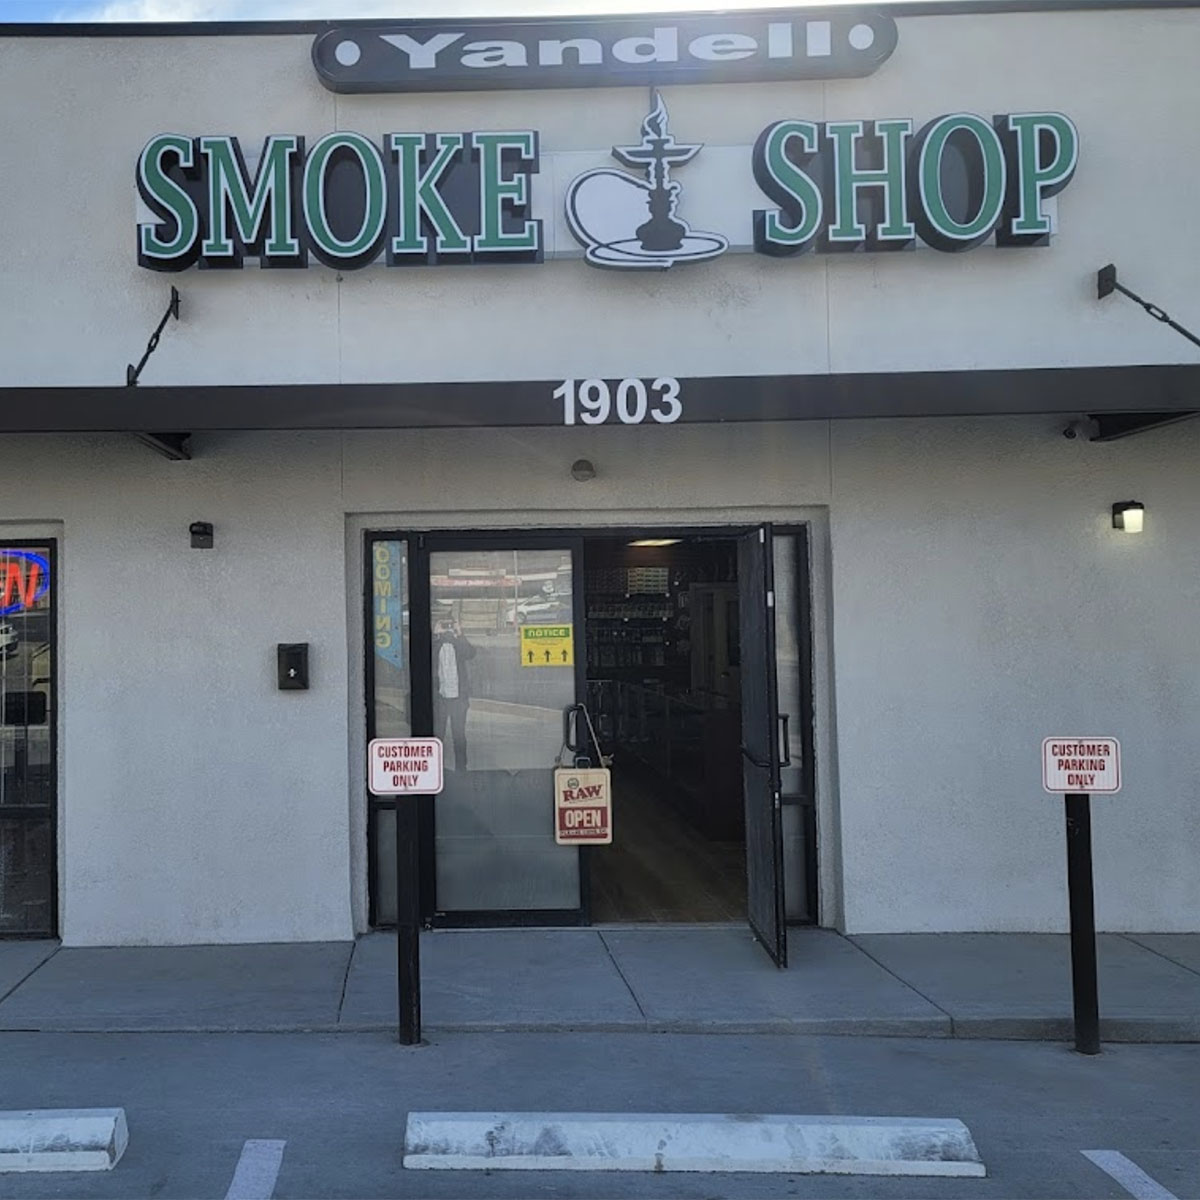 Water Pipes Yandell Smoke Shop - El Paso Smoke Shops near me